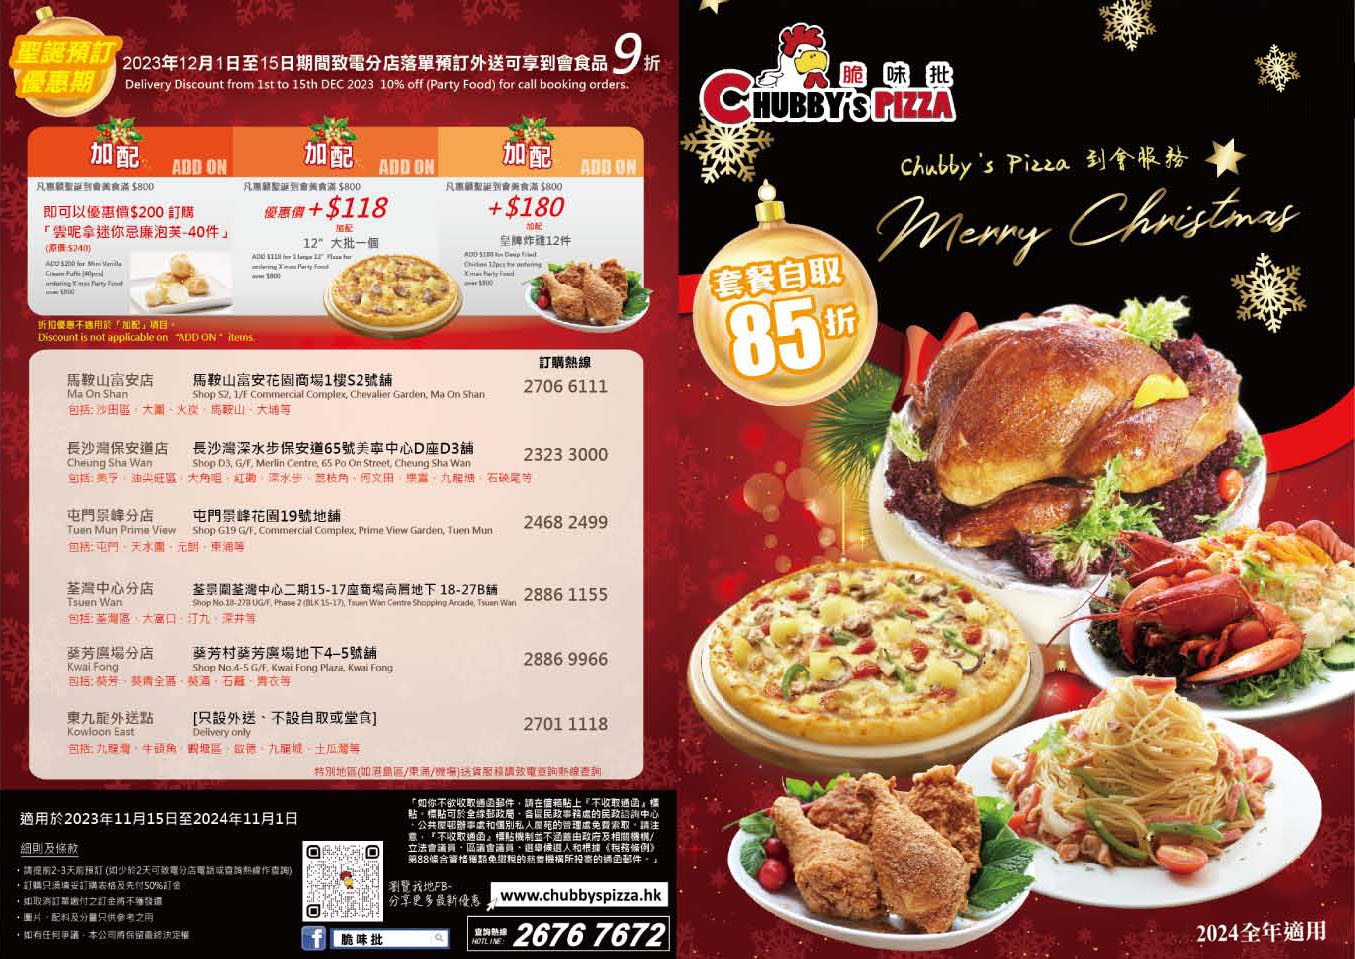 香港脆味批薄餅速遞服務 chubby's pizza delivery menu promotion package hong kong 速遞美食外賣紙餐劵餐單特價錢優惠價格餐牌價目表